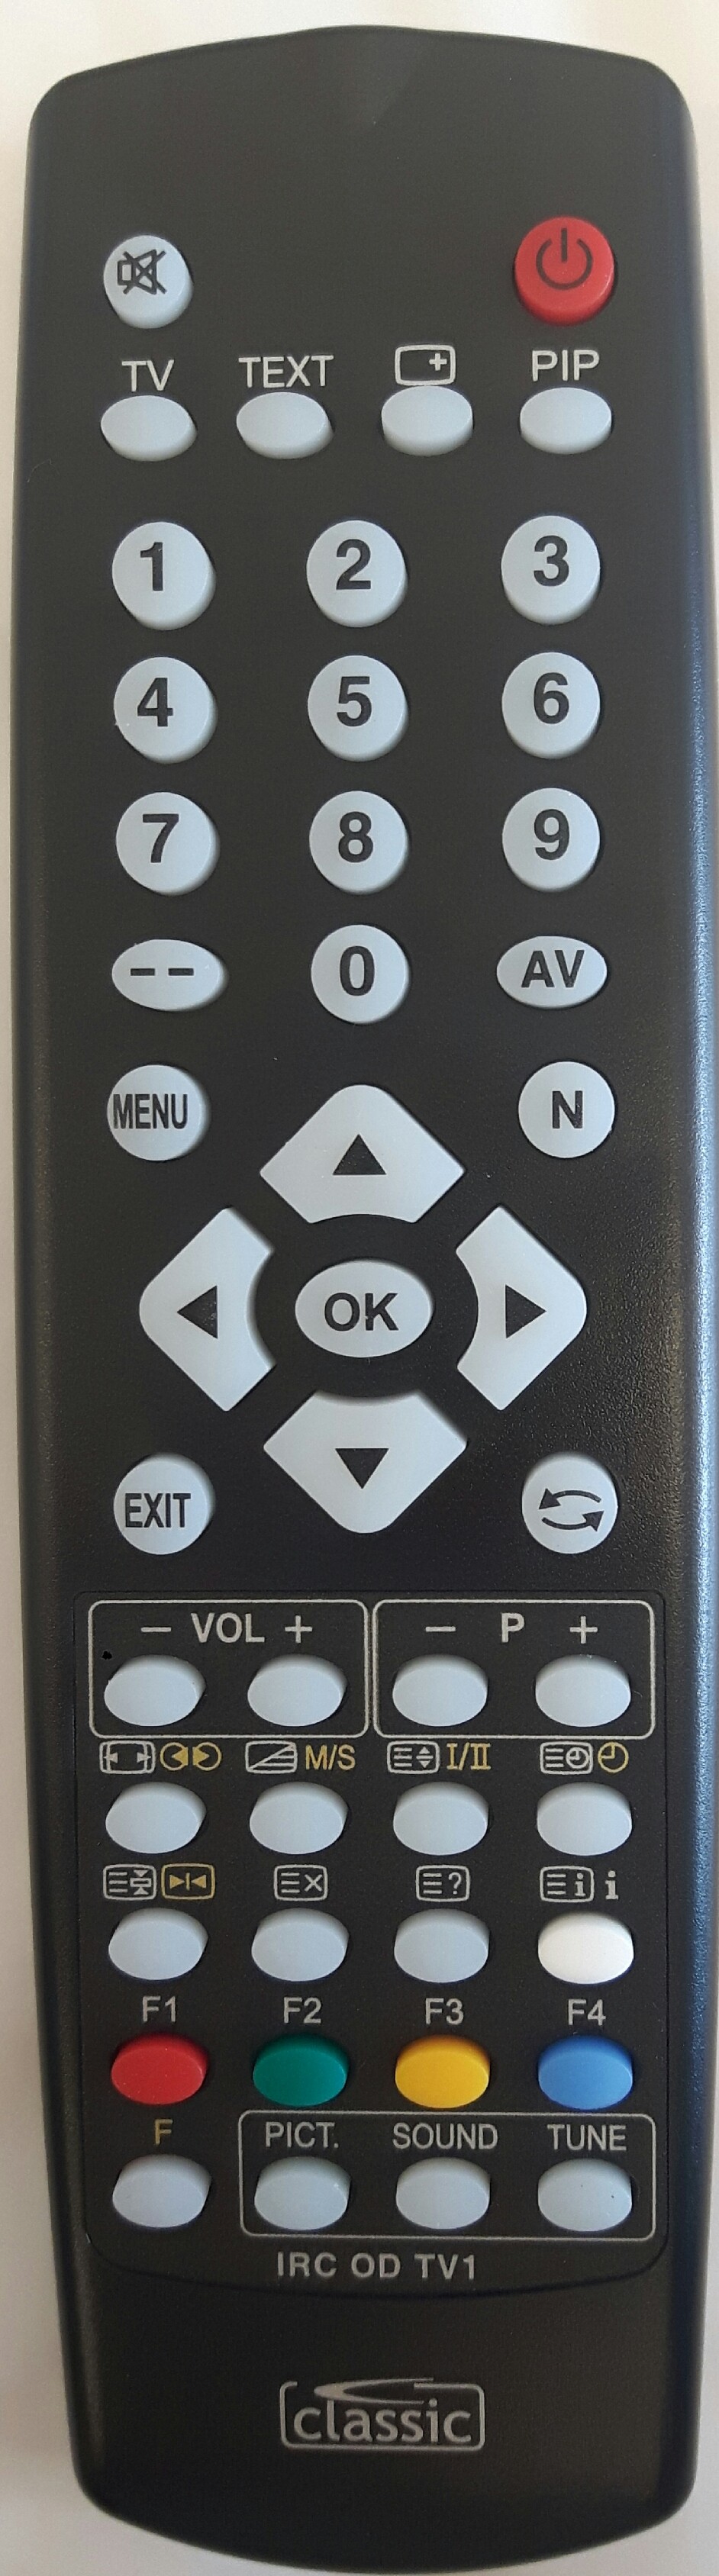 ORION T 2145 MTX Remote Control